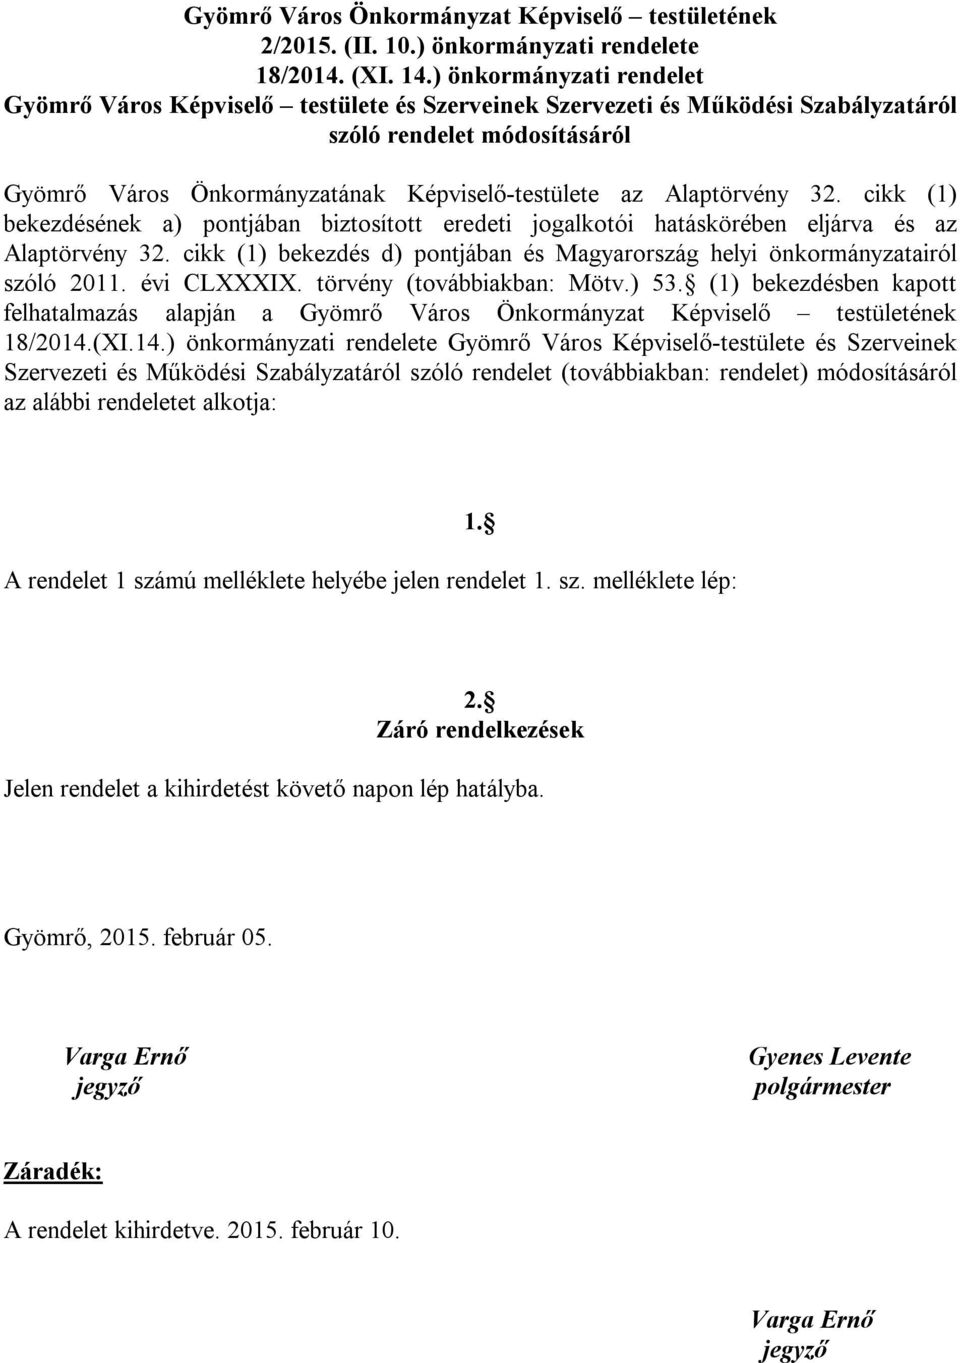 Alaptörvény 3 cikk (1) bekezdésének a) pontjában biztosított eredeti jogalkotói hatáskörében eljárva és az Alaptörvény 3 cikk (1) bekezdés d) pontjában és Magyarország helyi önkormányzatairól szóló